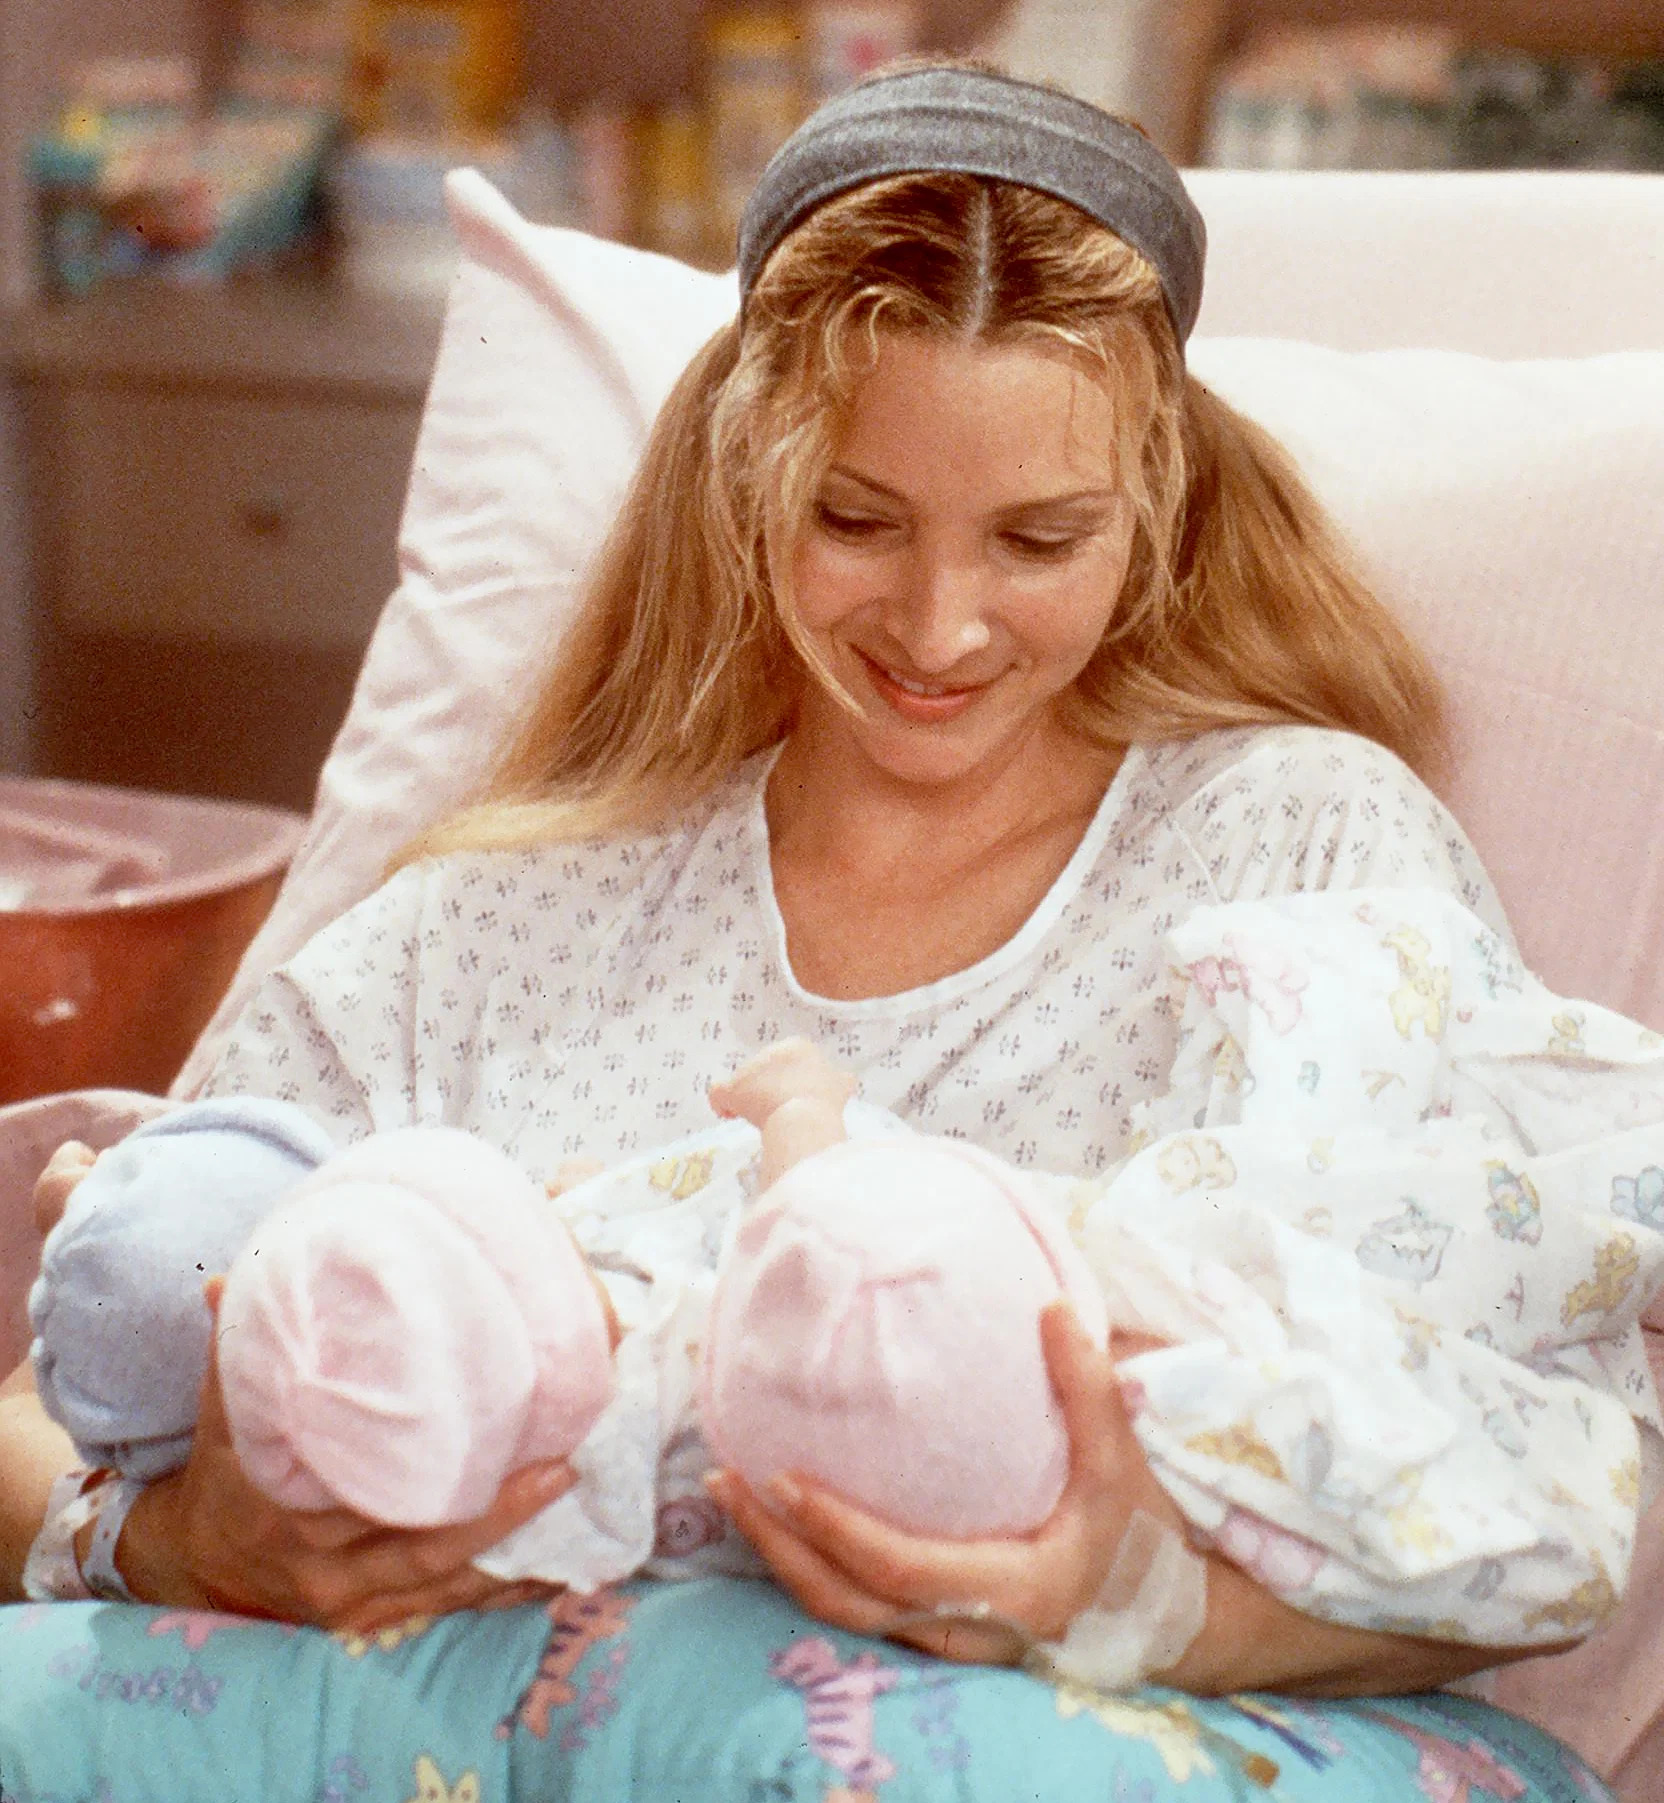 Las 5 escenas más recordadas de Phoebe Buffay